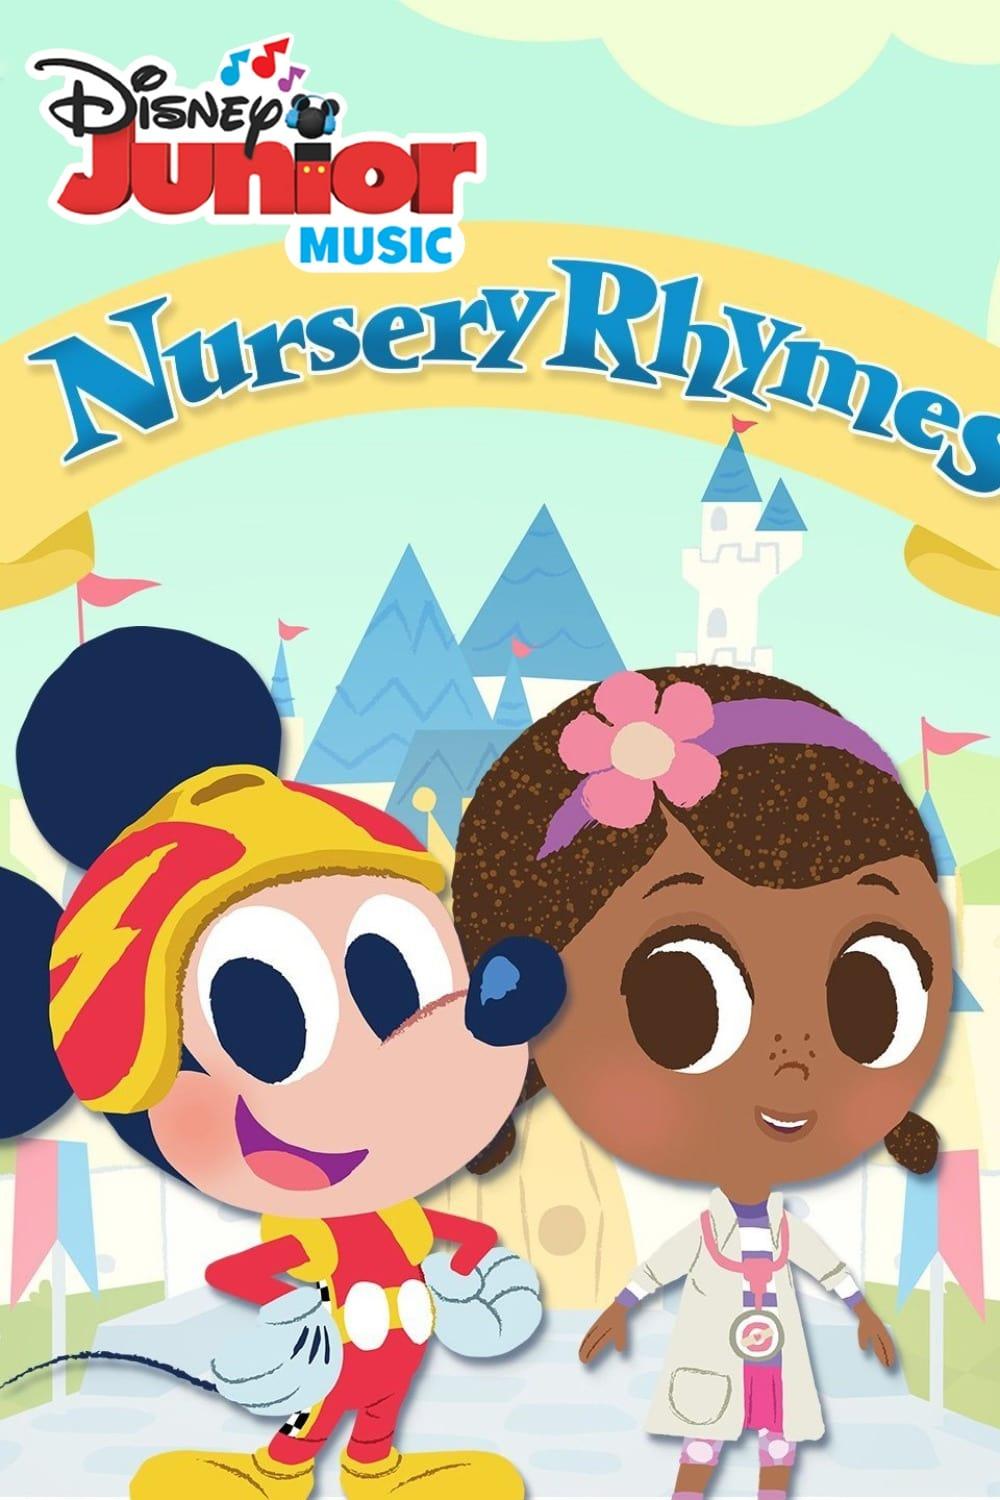 Disney Junior Music Nursery Rhymes poster